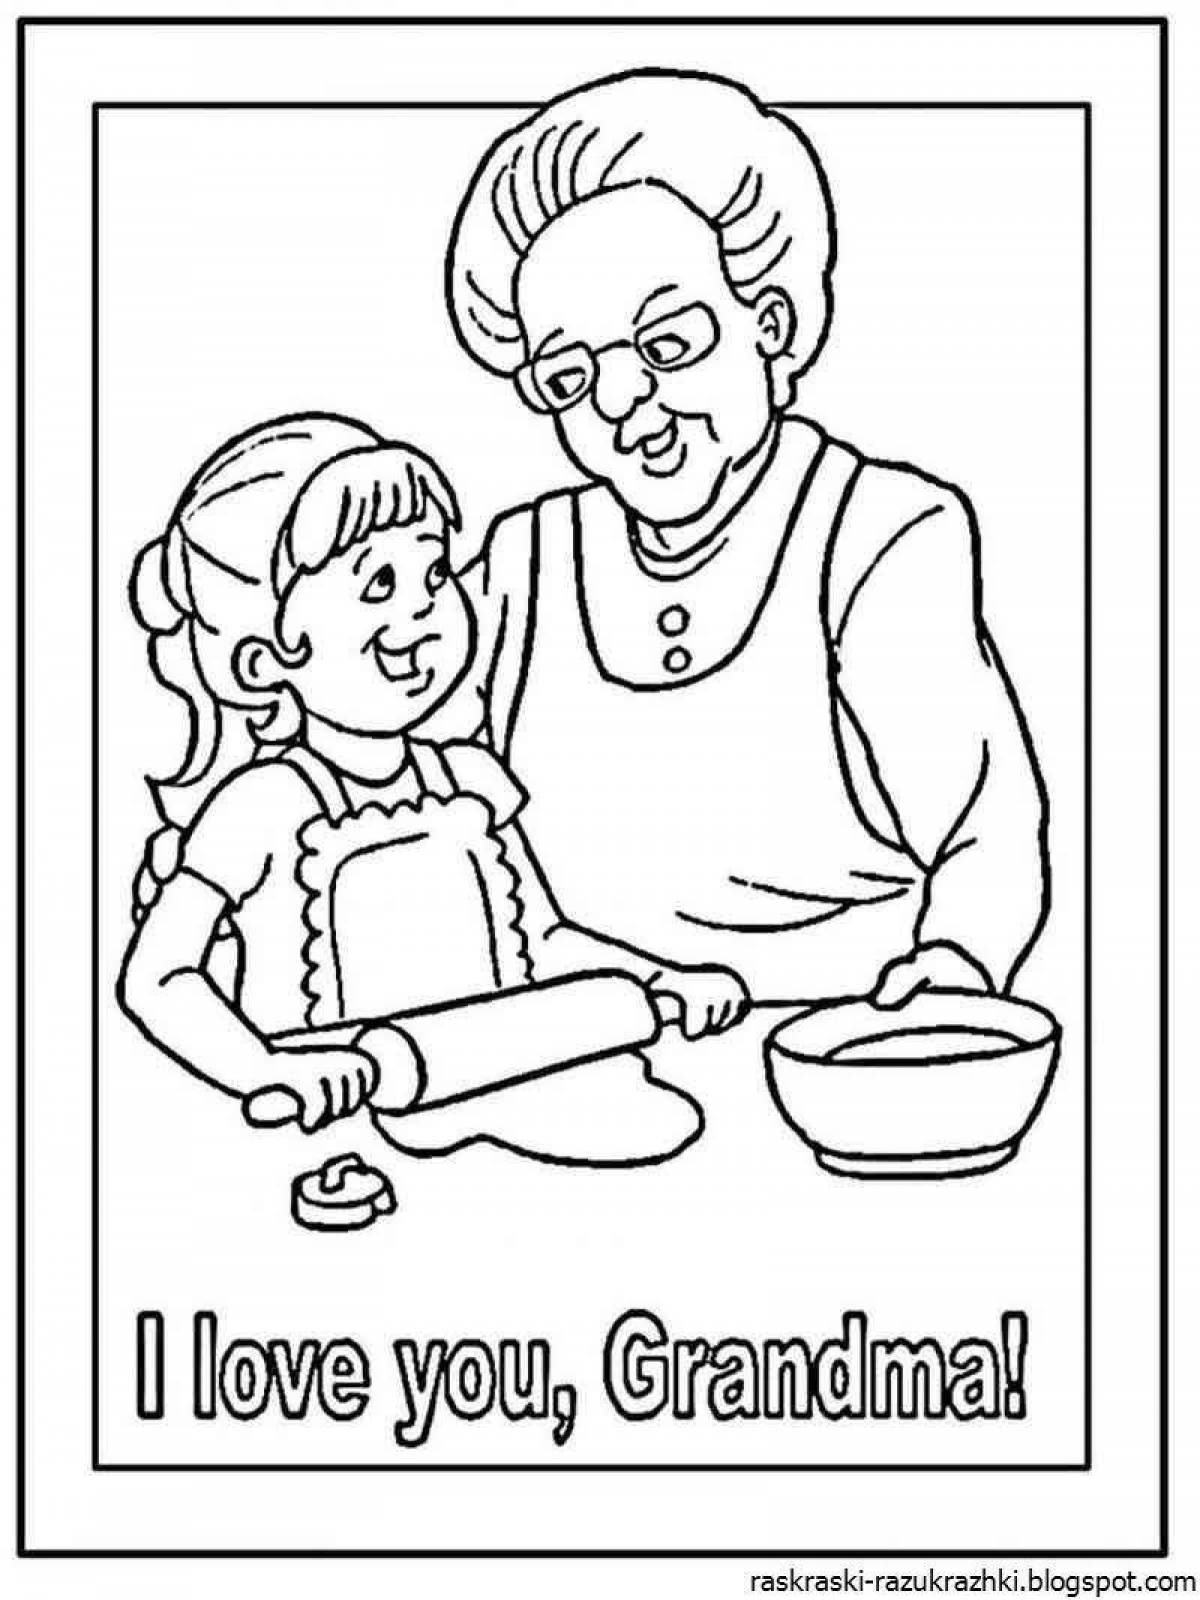 Inspiring grandma coloring book